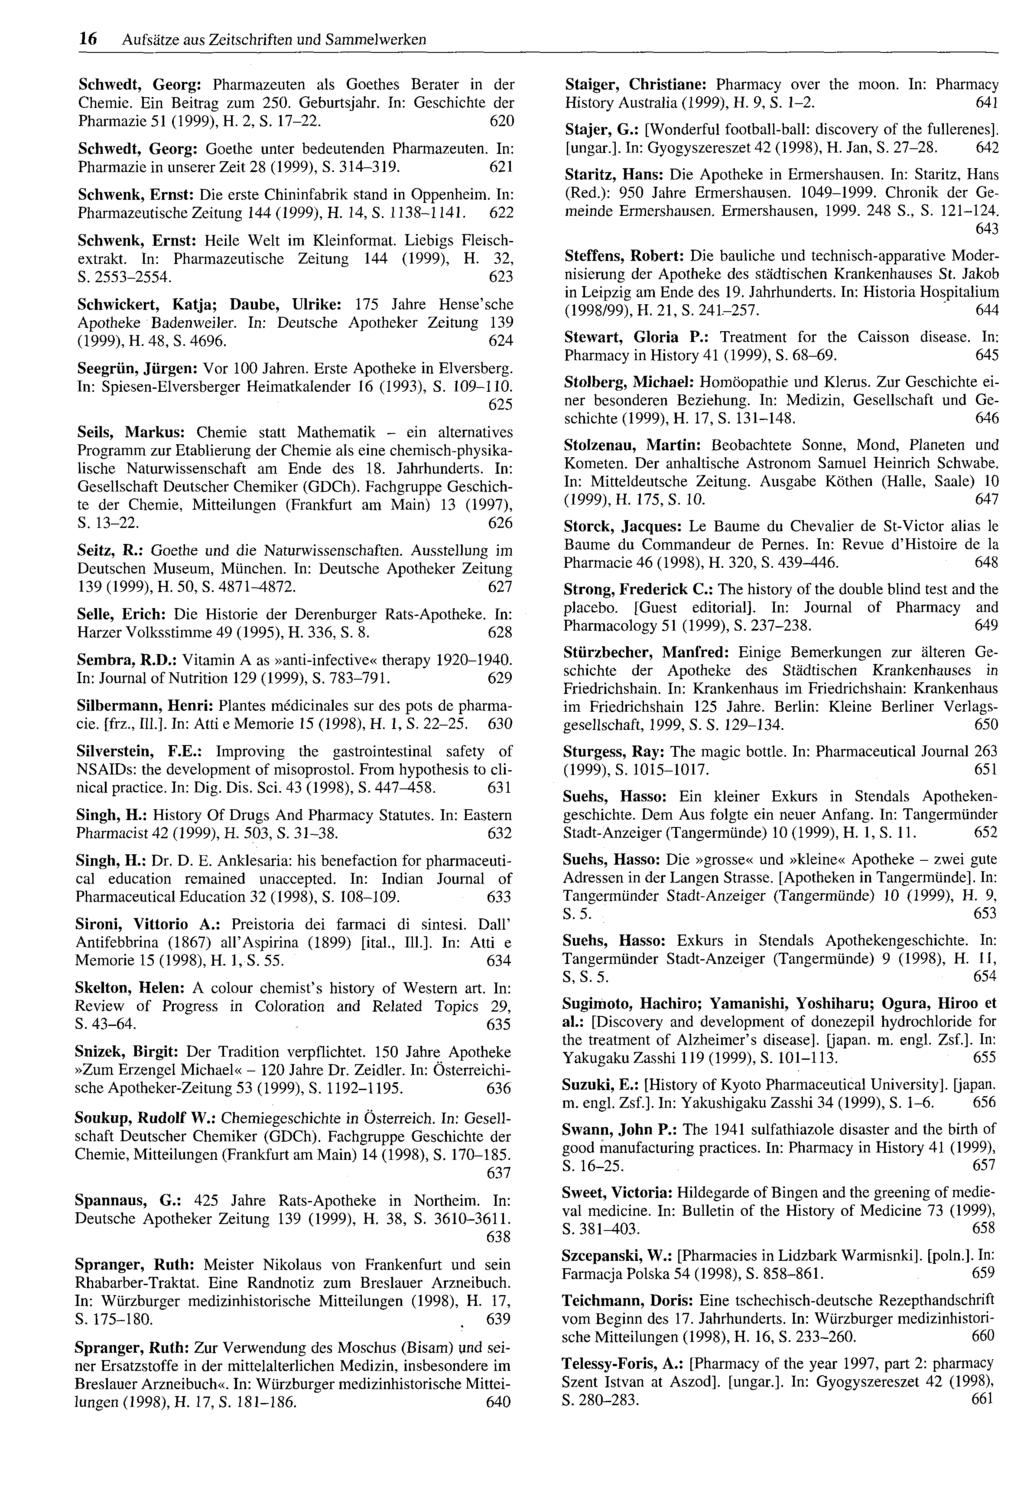 16 Aufsätze aus Zeitschriften und Sammelwerken Schwedt, Georg: Pharmazeuten als Goethes Berater in der Chemie. Ein Beitrag zum 250. Geburtsjahr. In: Geschichte der Pharmazie 51 (1999), H. 2, S. 17-22.